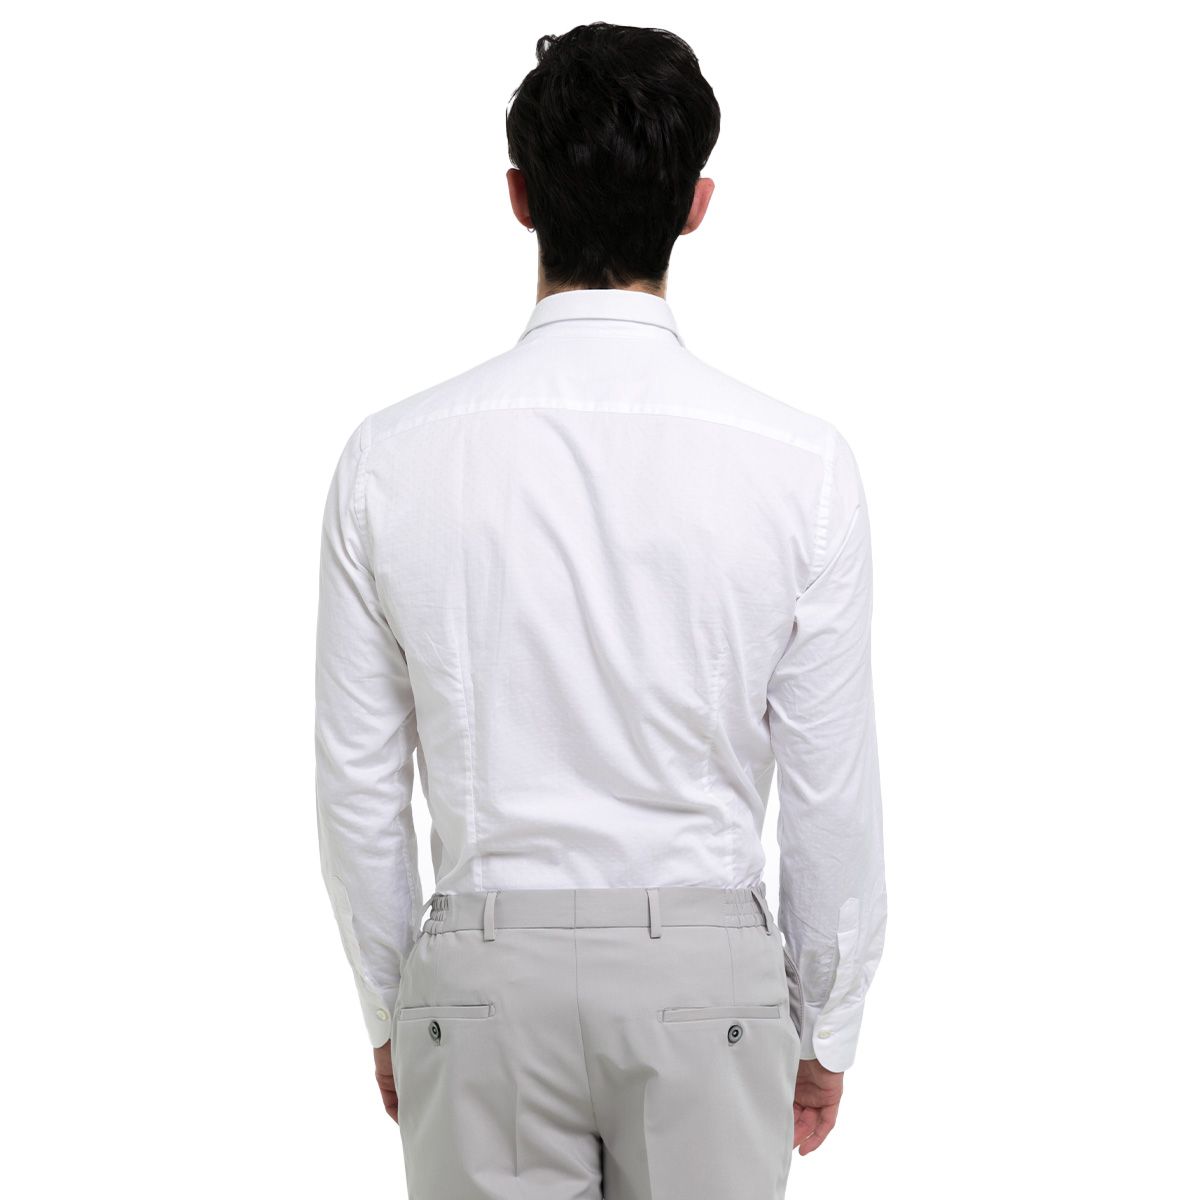 Satin Long Sleeved White Shirt